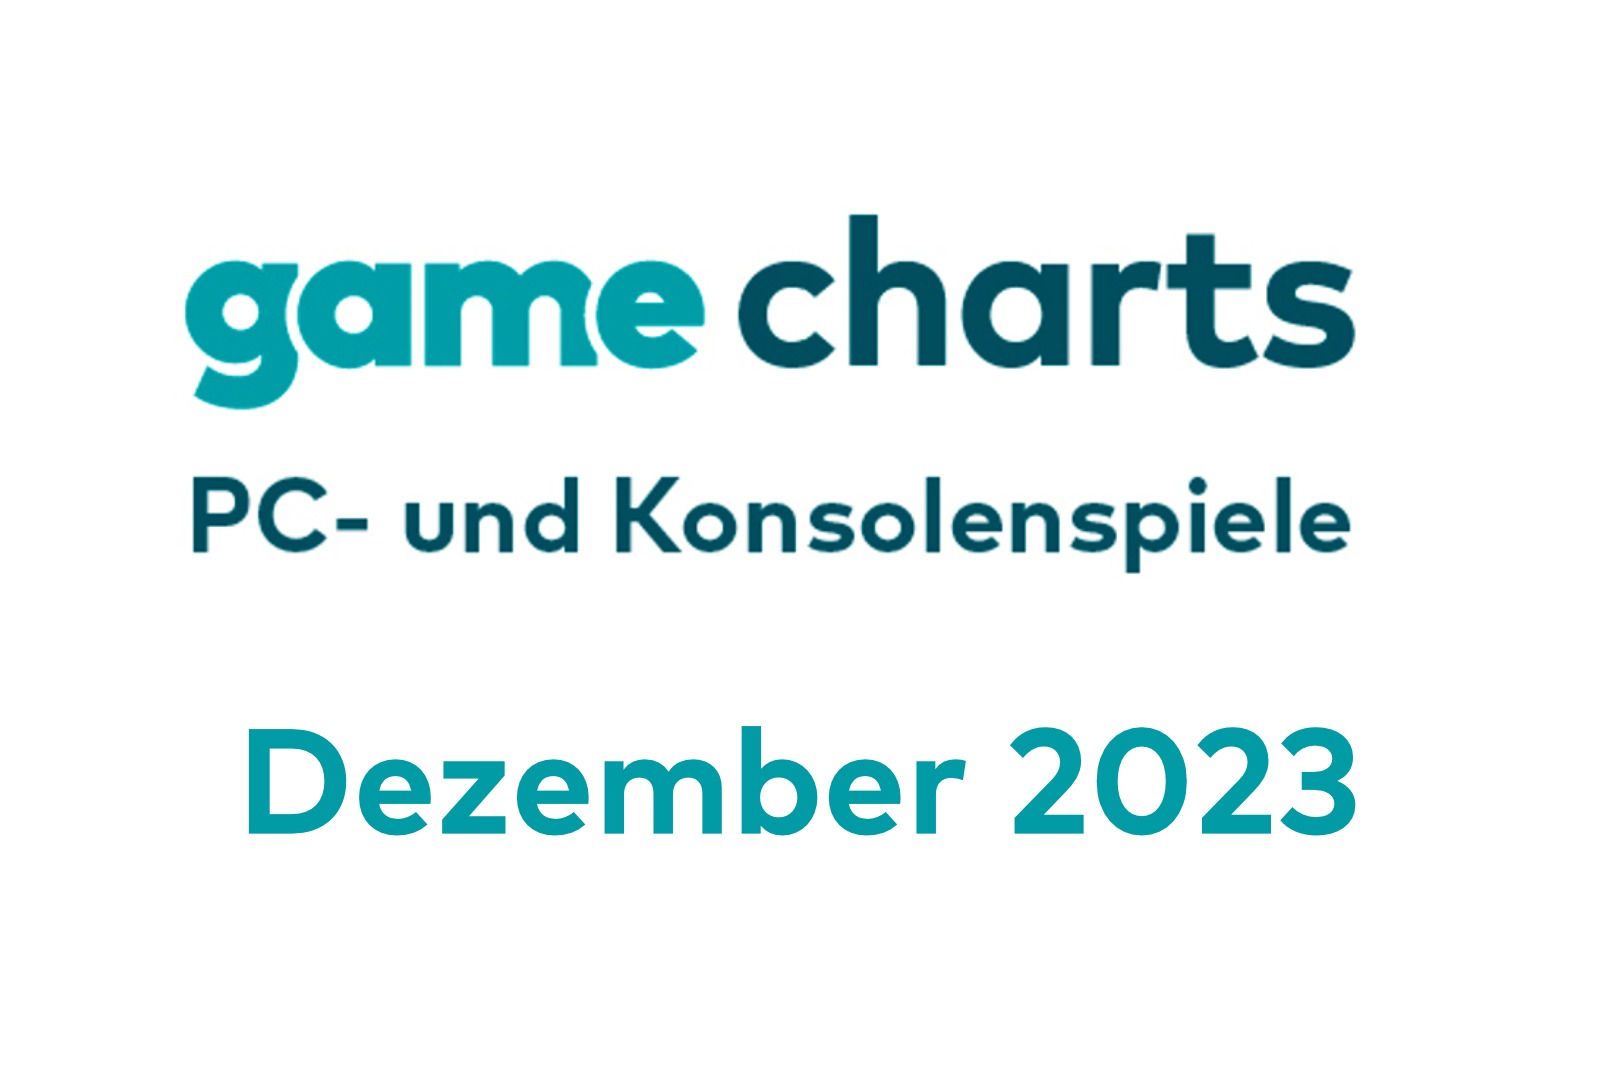 game Charts im Dezember: Diese PC- und Konsolenspiele waren während des Weihnachtsgeschäfts besonders erfolgreich